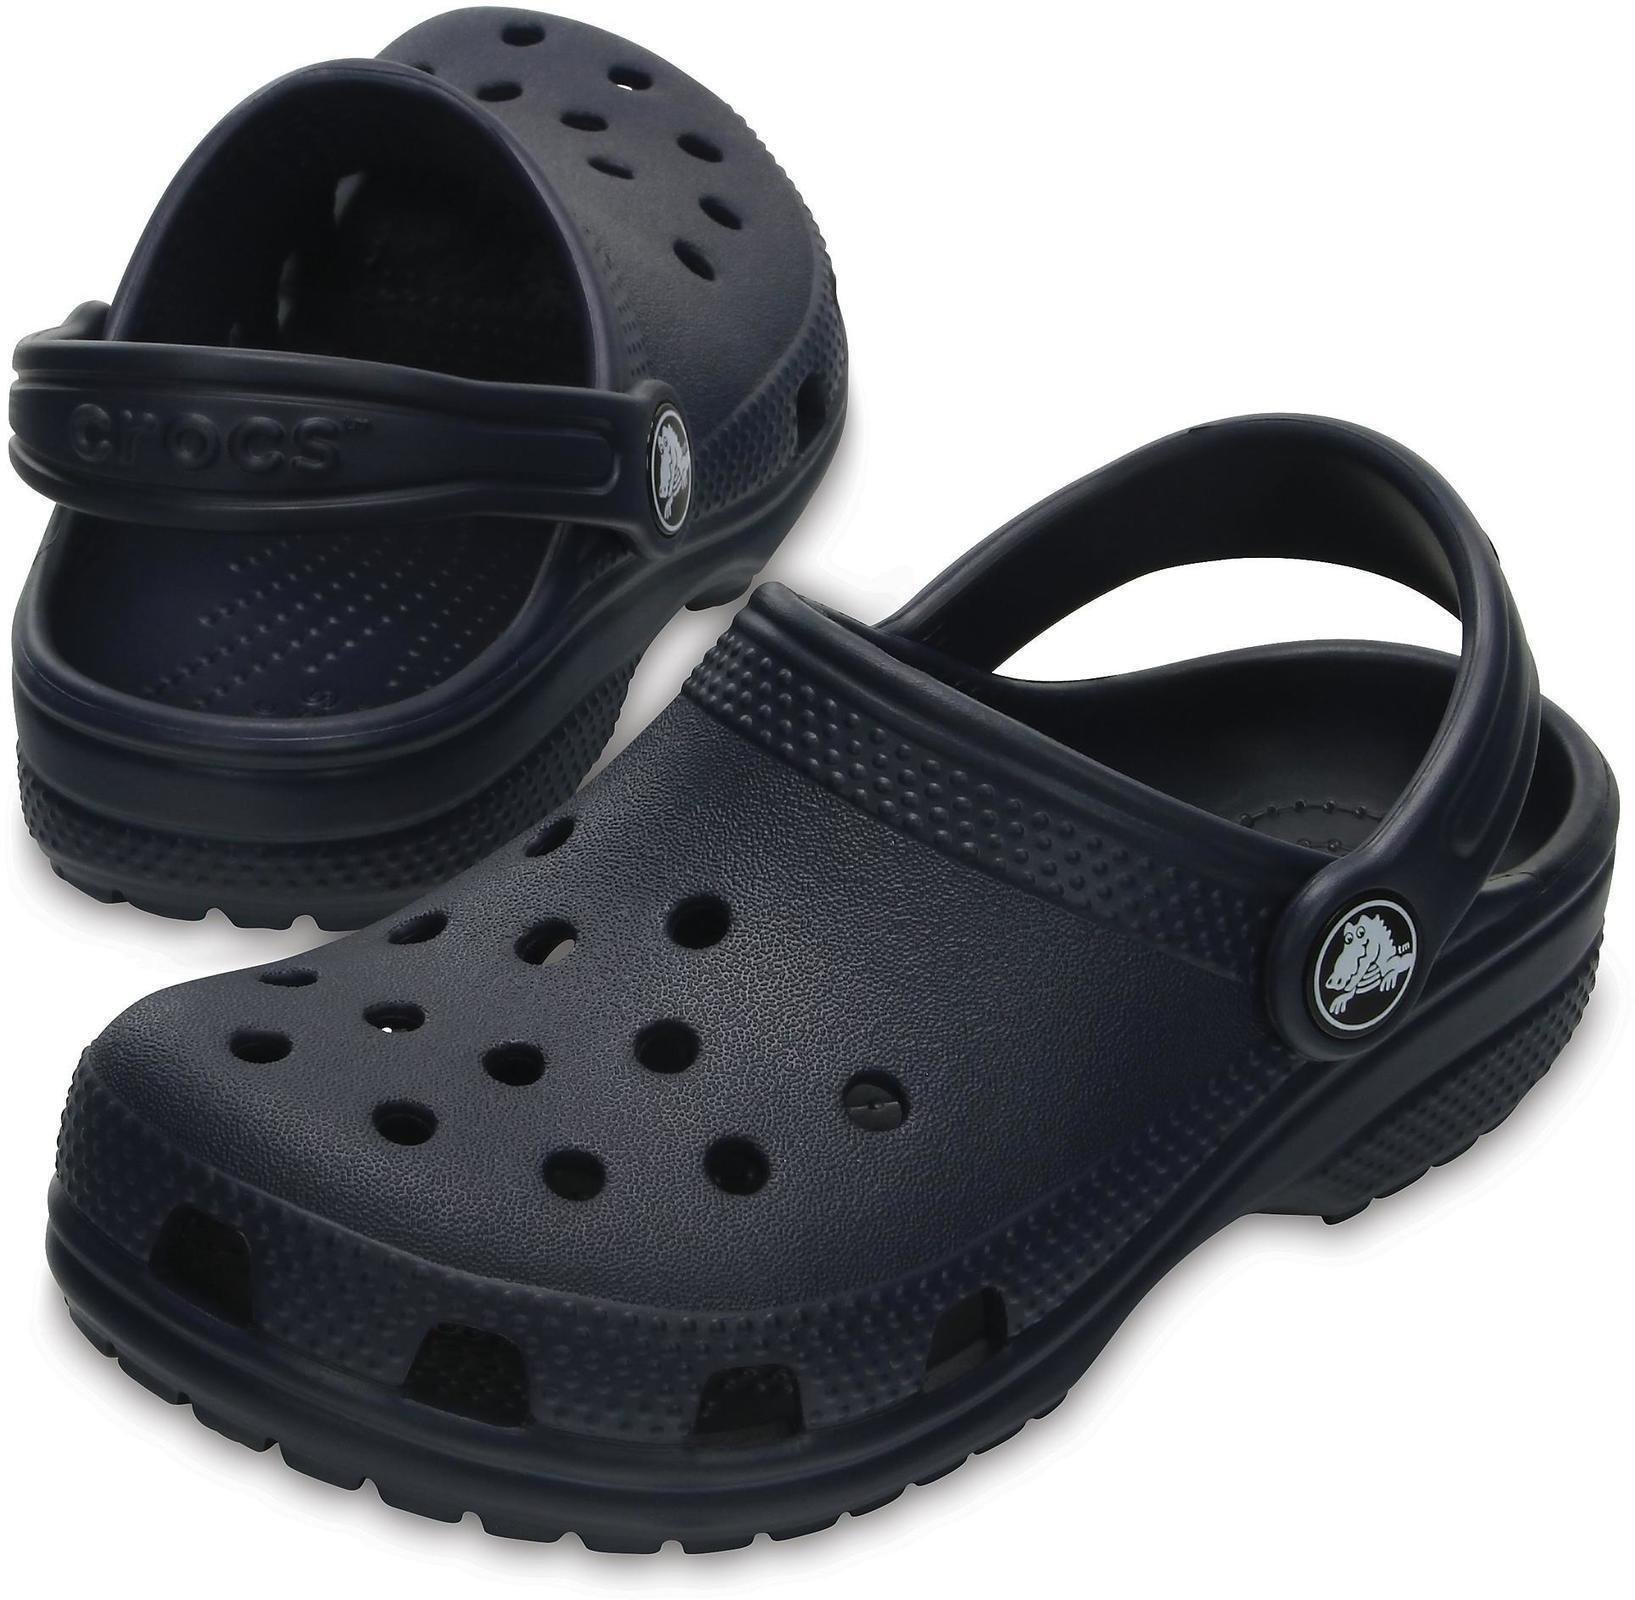 Buty żeglarskie dla dzieci Crocs Kids' Classic Clog Navy 32-33